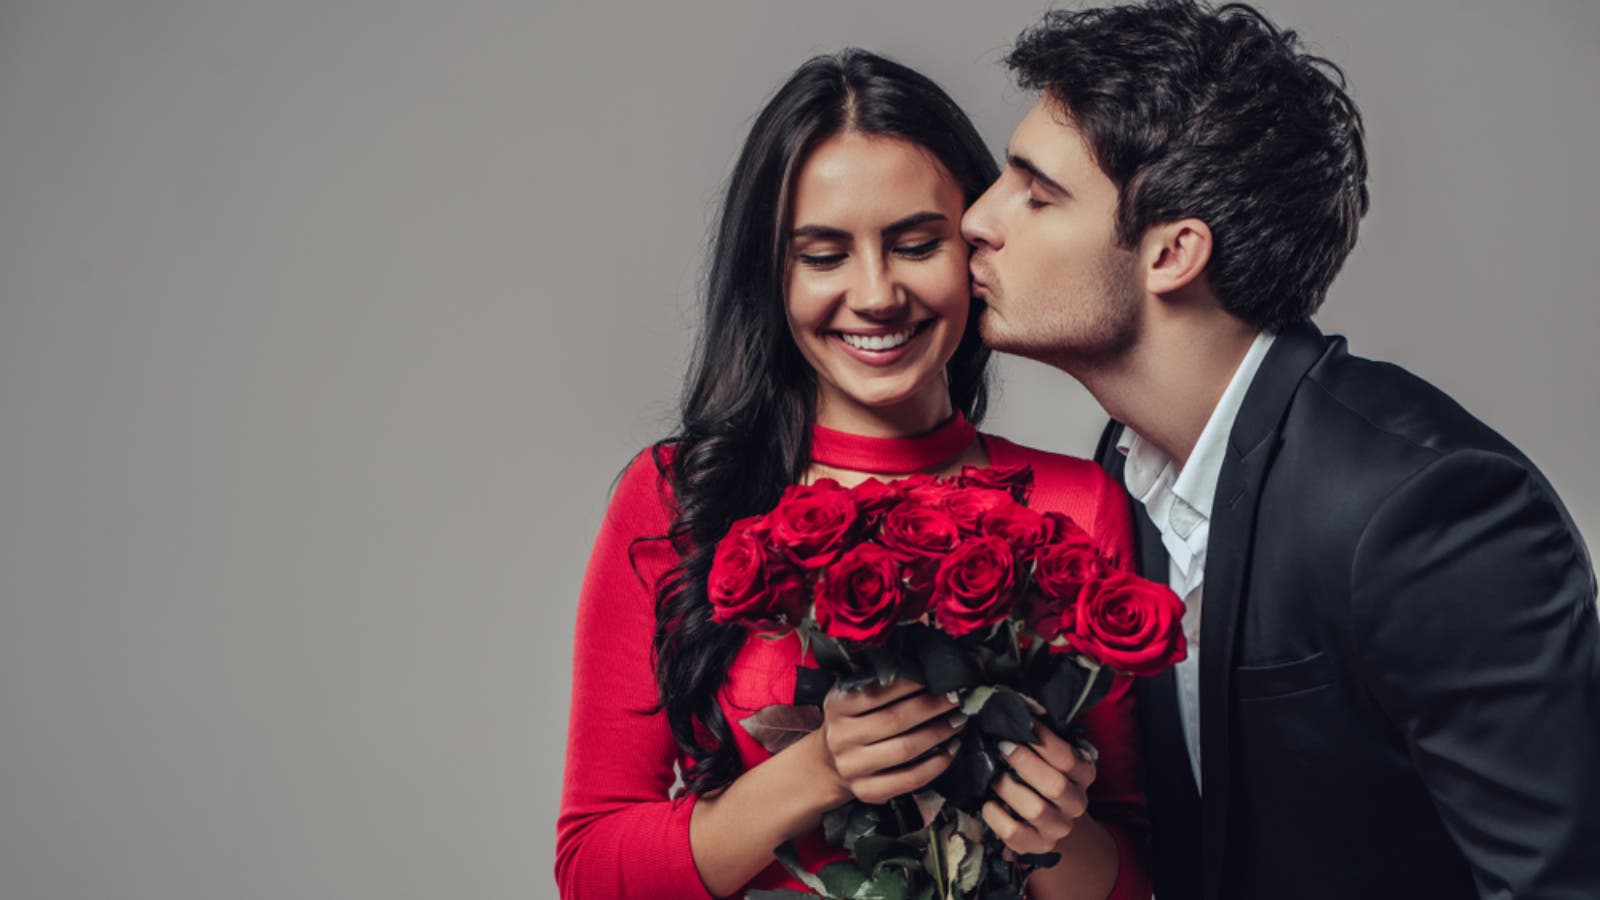 عبارات عن الحب قوية 2022 كلمات حب رومانسية معبرة جميلة جدا كاملة ومكتوبة